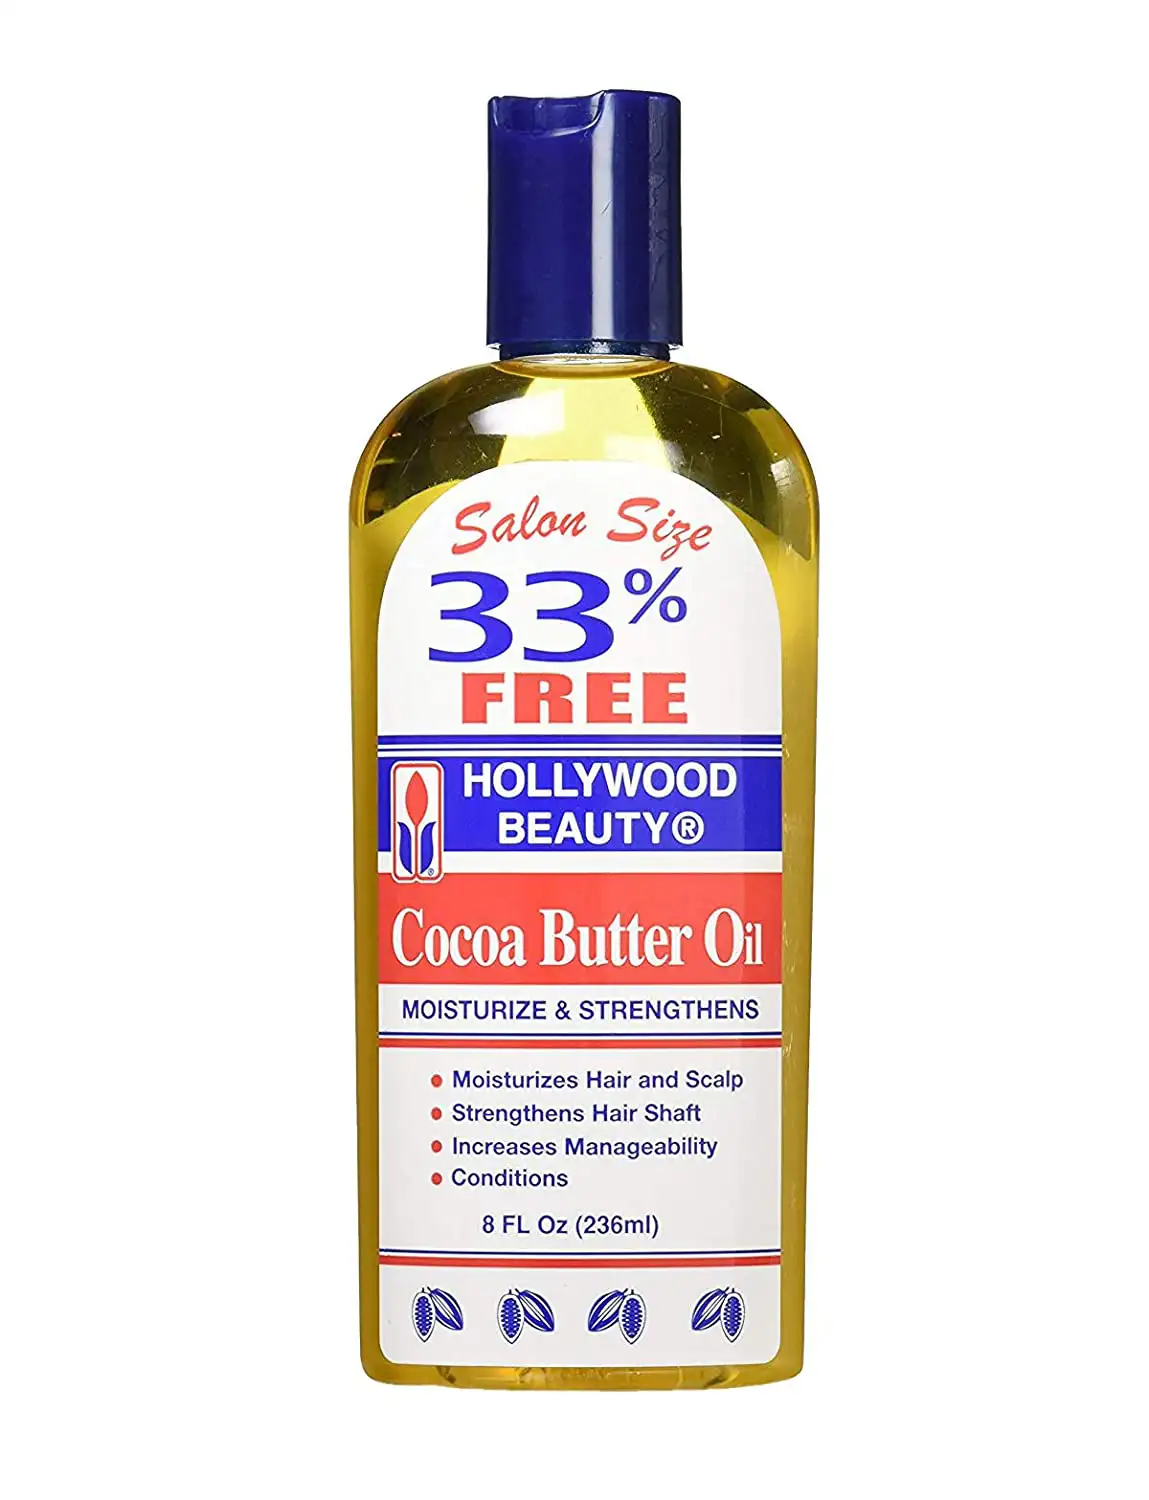 Hollywood beauty traitement hydratant pour cheveux et cuir chevelu a lhuile de beurre de cacao 8 oz_6850. DIAYTAR SENEGAL - Là où Chaque Produit est une Trouvaille Unique. Découvrez notre boutique en ligne et trouvez des articles qui vous distinguent par leur originalité.